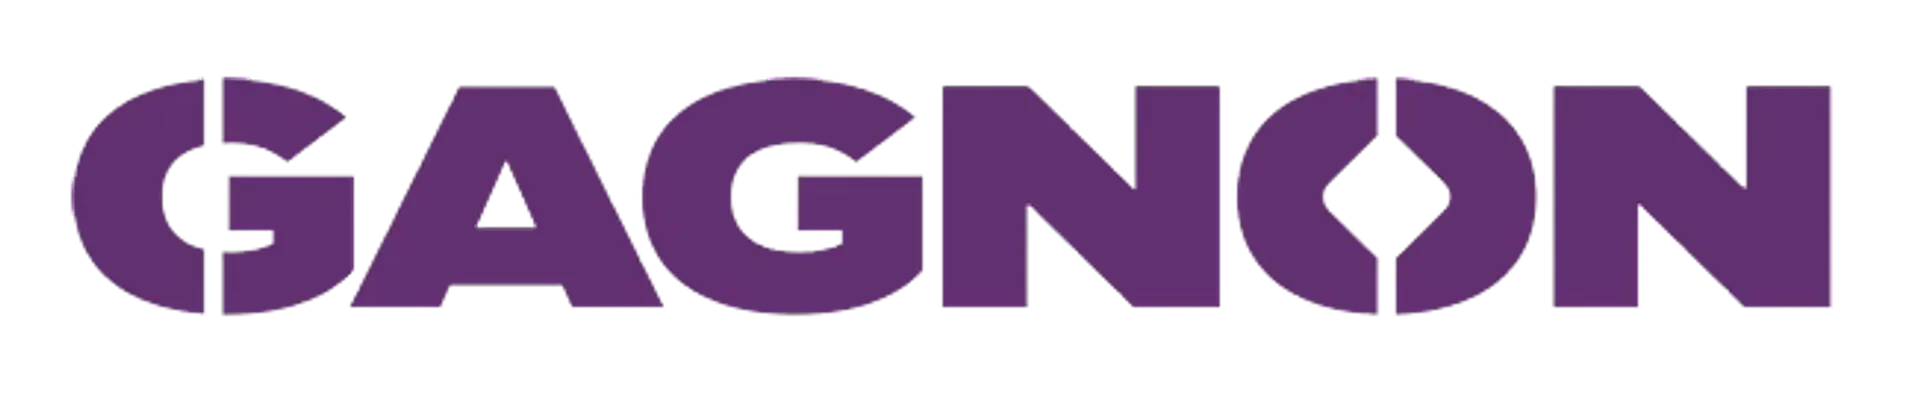 GAGNON logo de circulaires